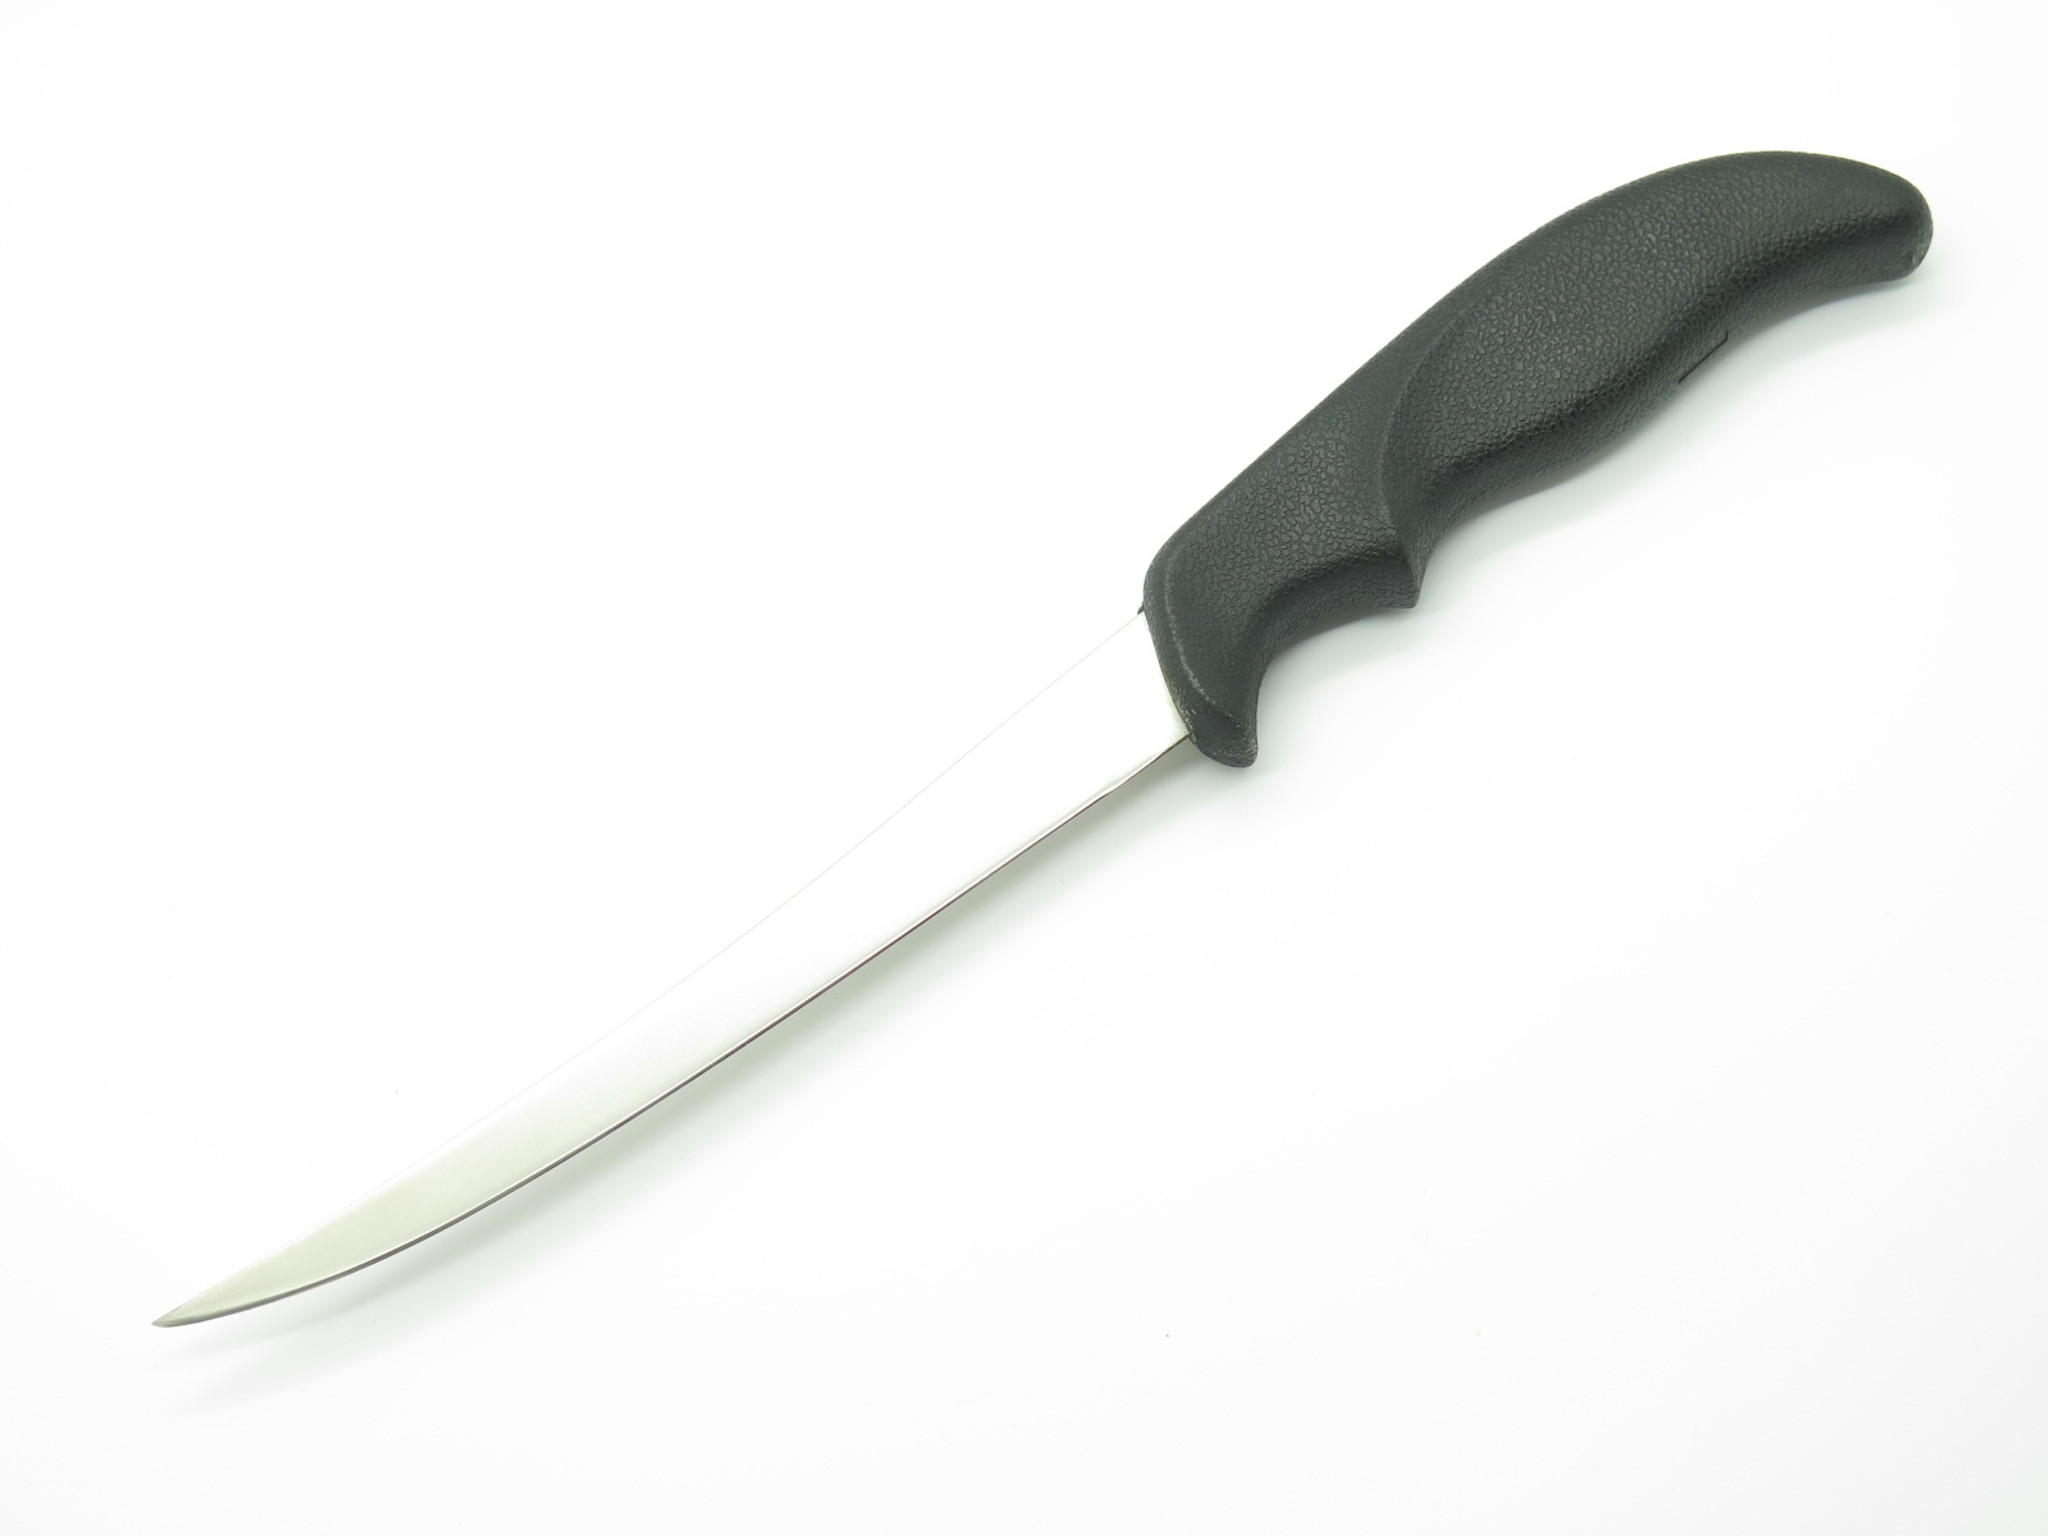 Sidewinder X-Blade Knife & Sharpener: 6 inch Fillet Knife - Exeter